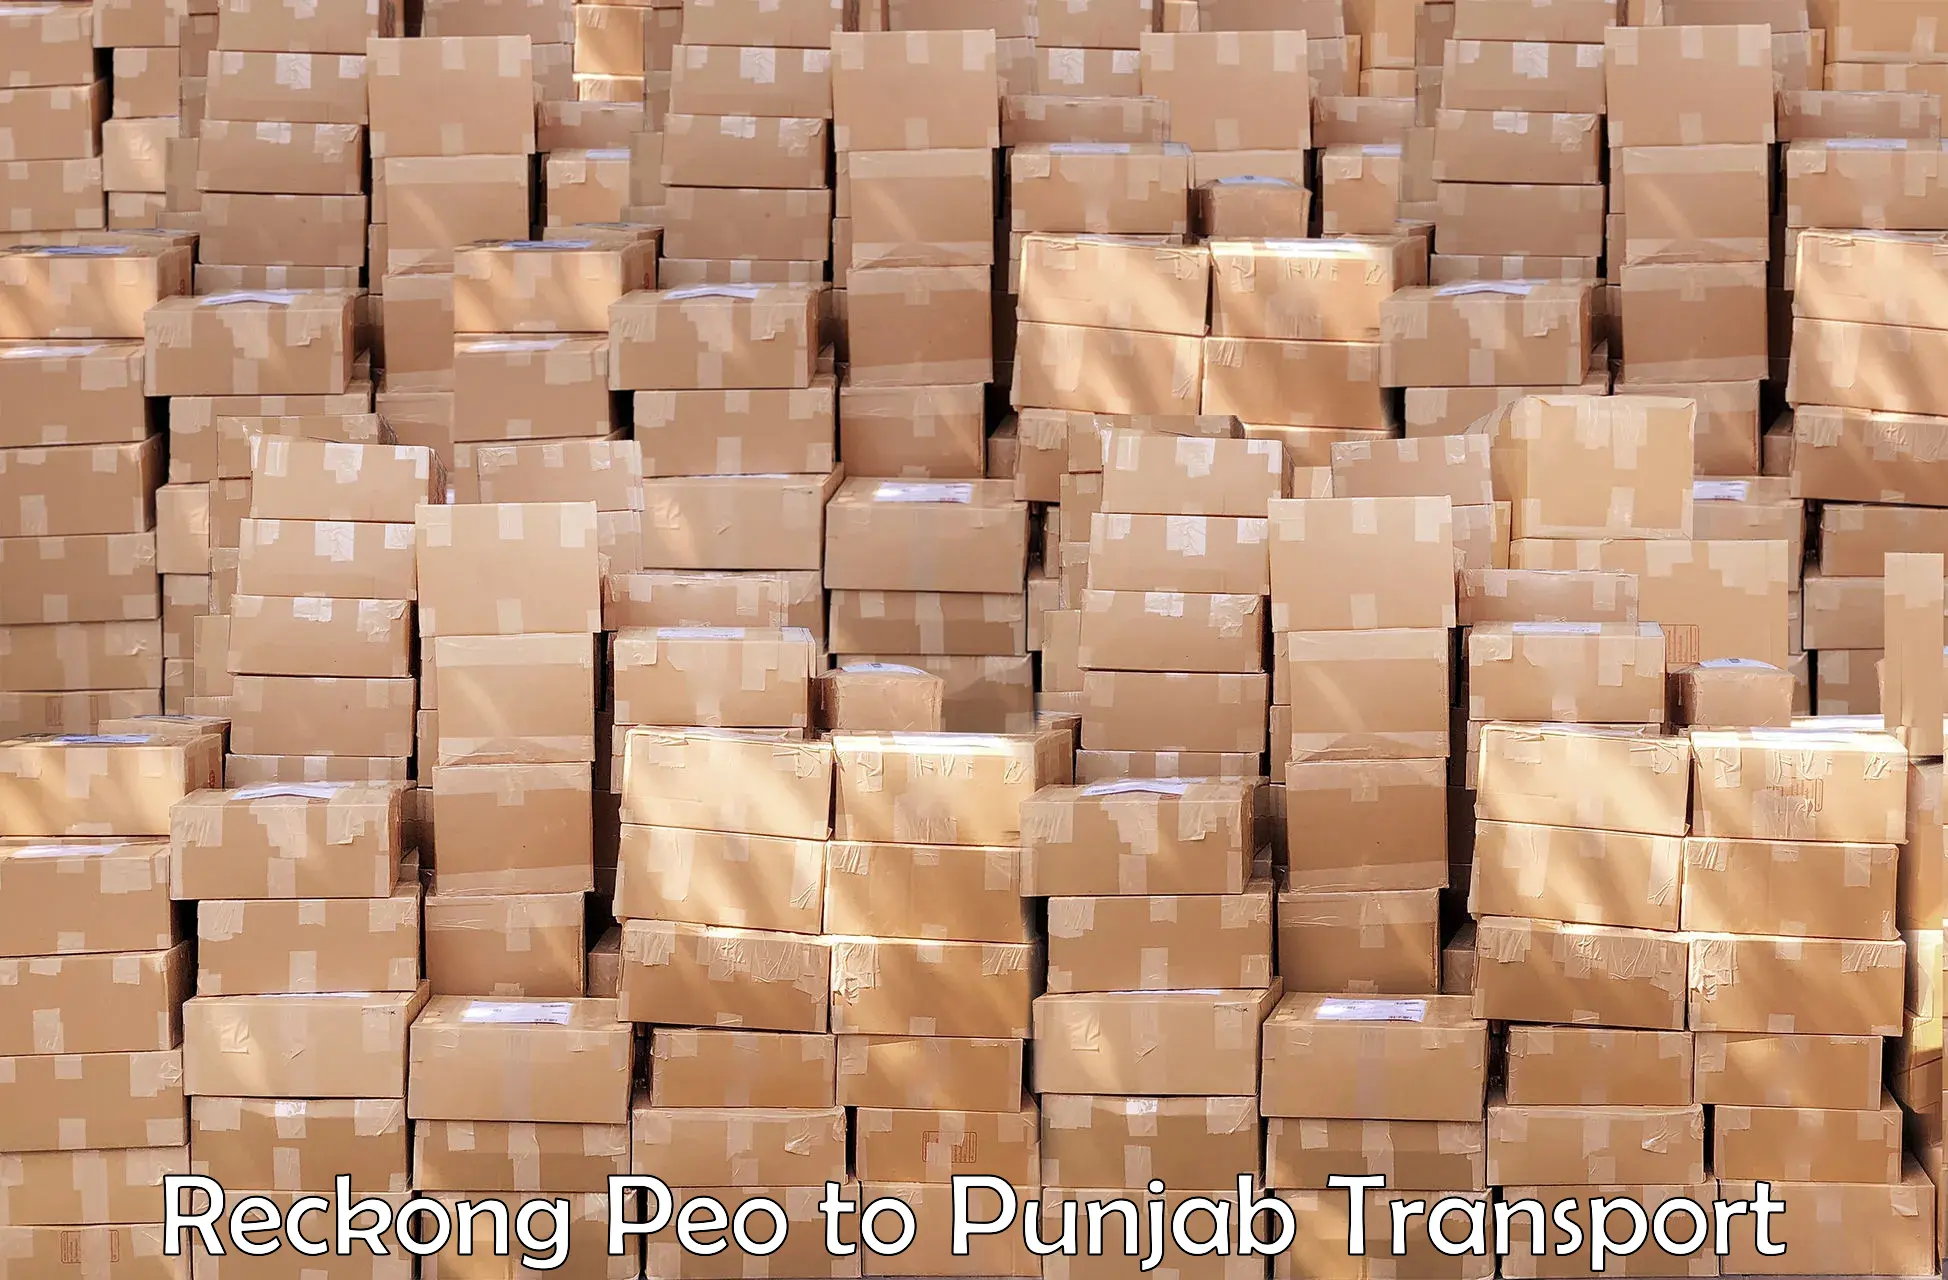 Furniture transport service Reckong Peo to Punjab